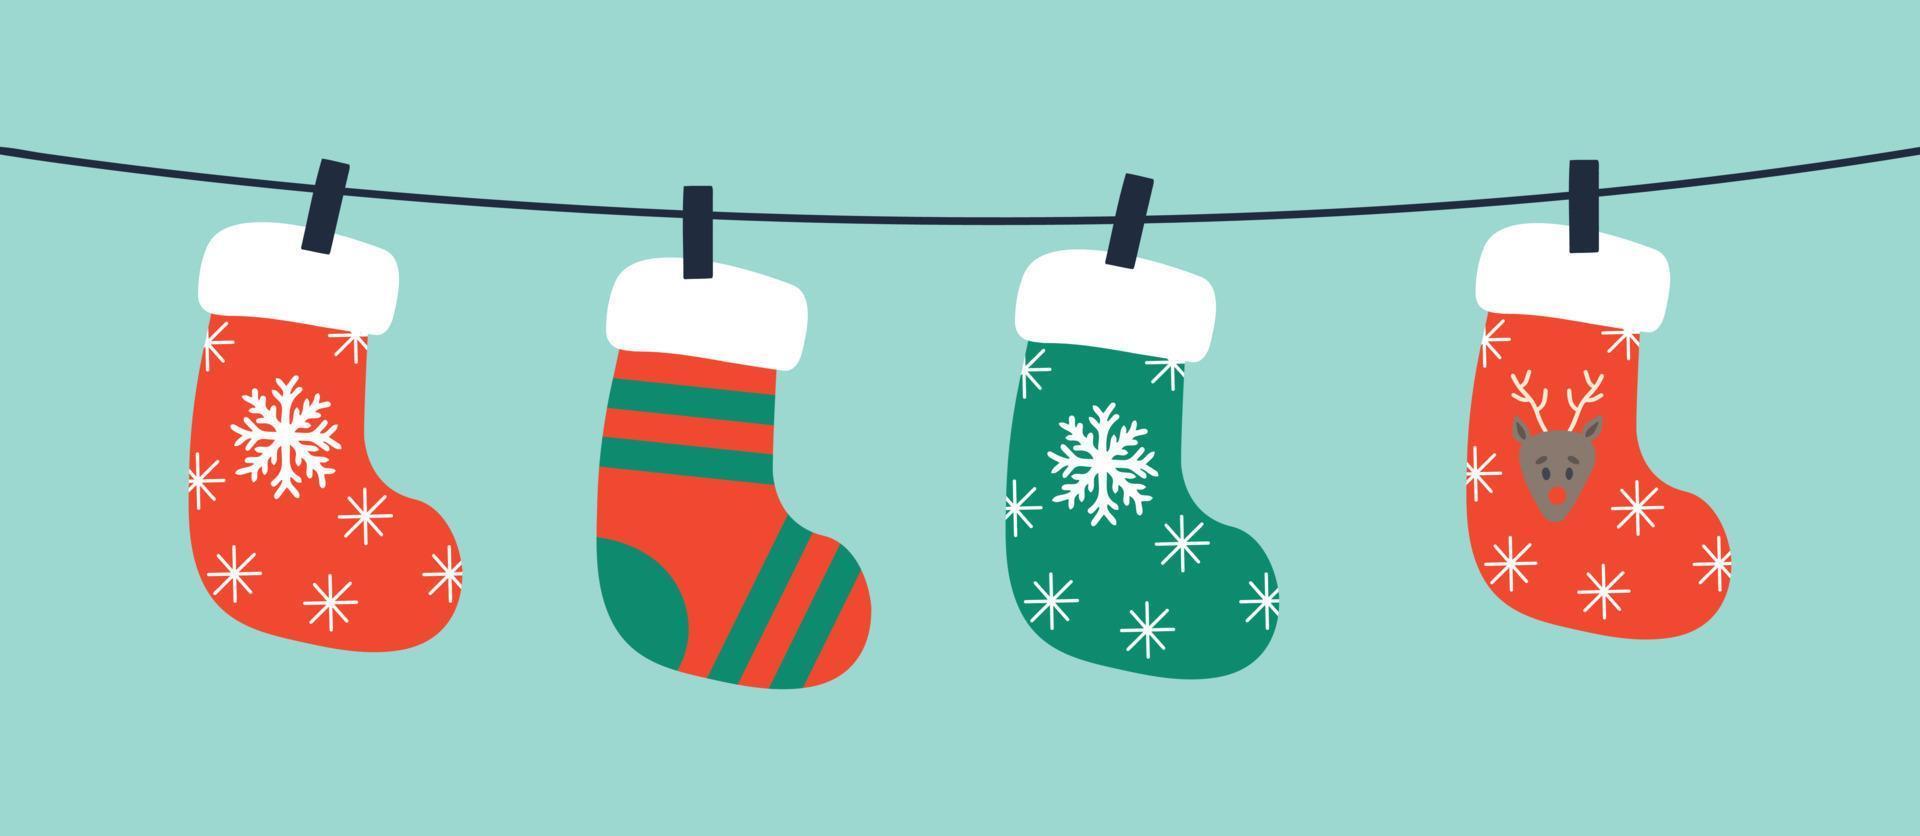 Fondo de vector de calcetines de Navidad. varios calcetines navideños colgando de una cuerda.